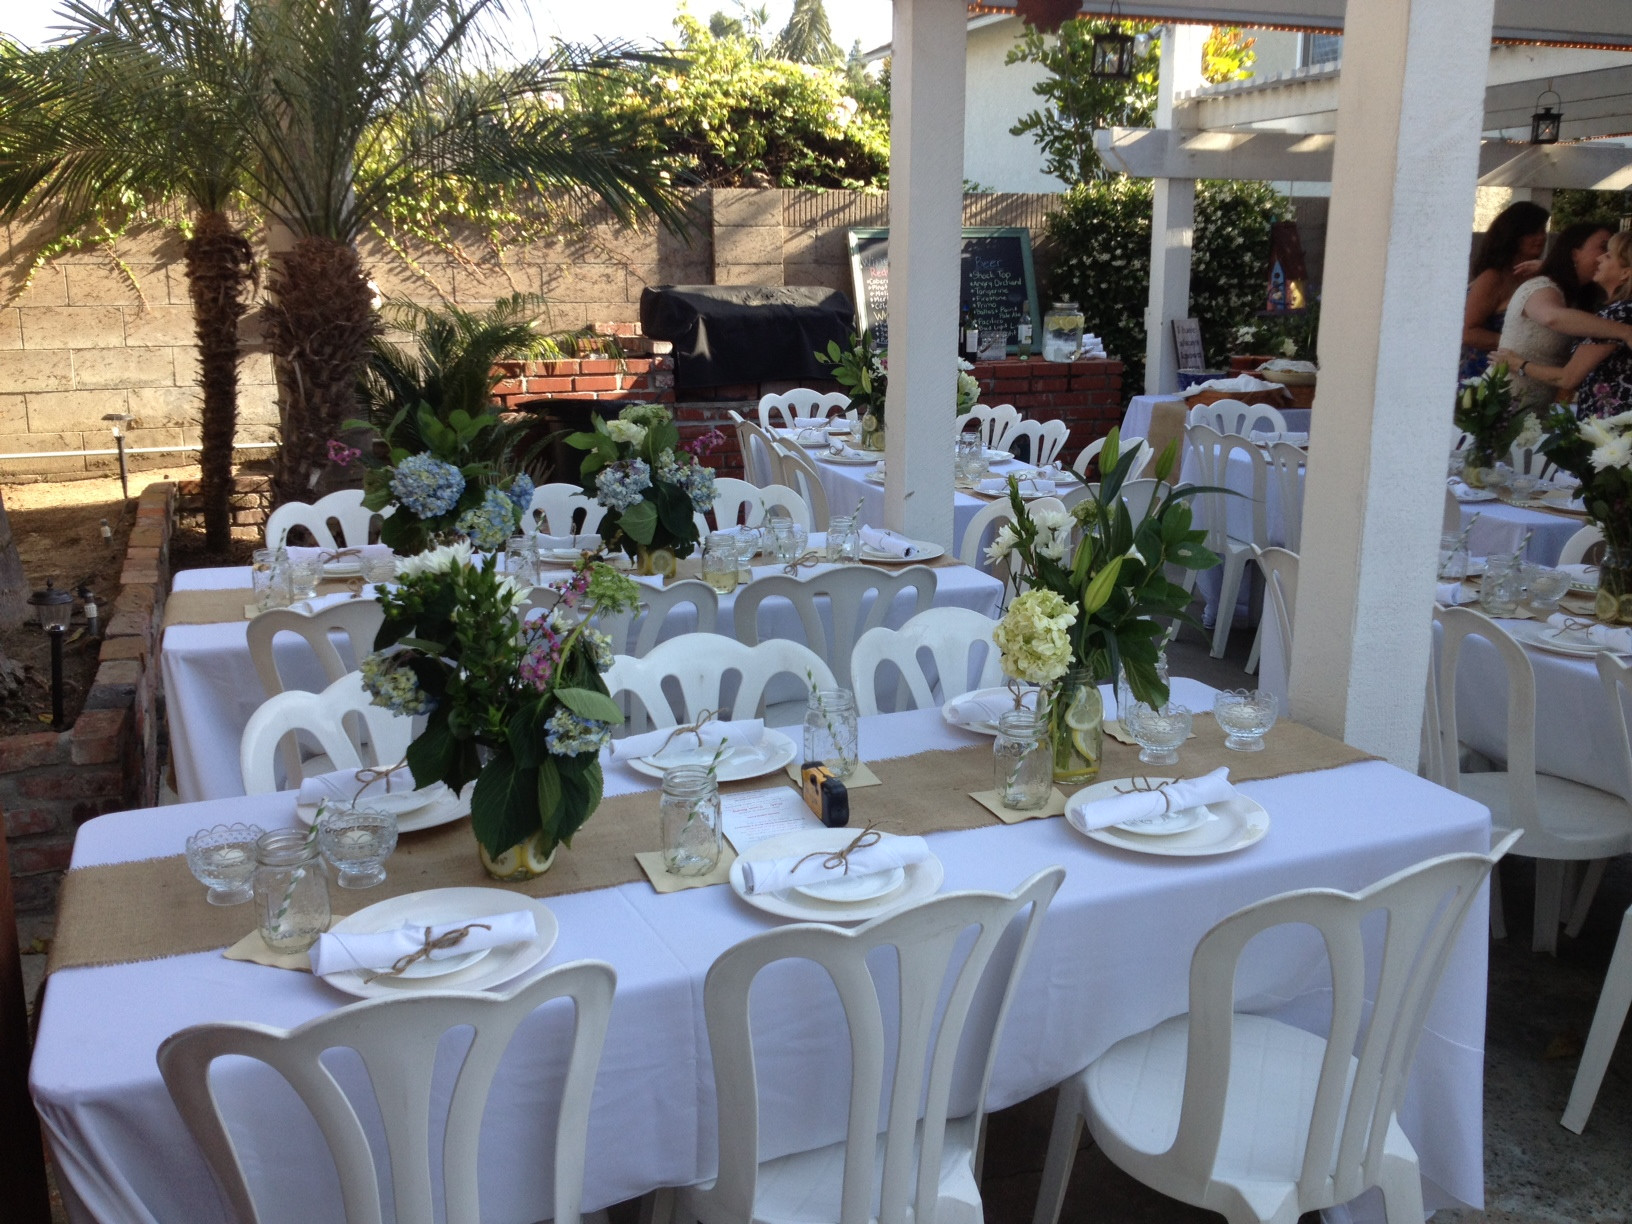 DIY Wedding Reception Ideas
 Backyard DIY Wedding Reception